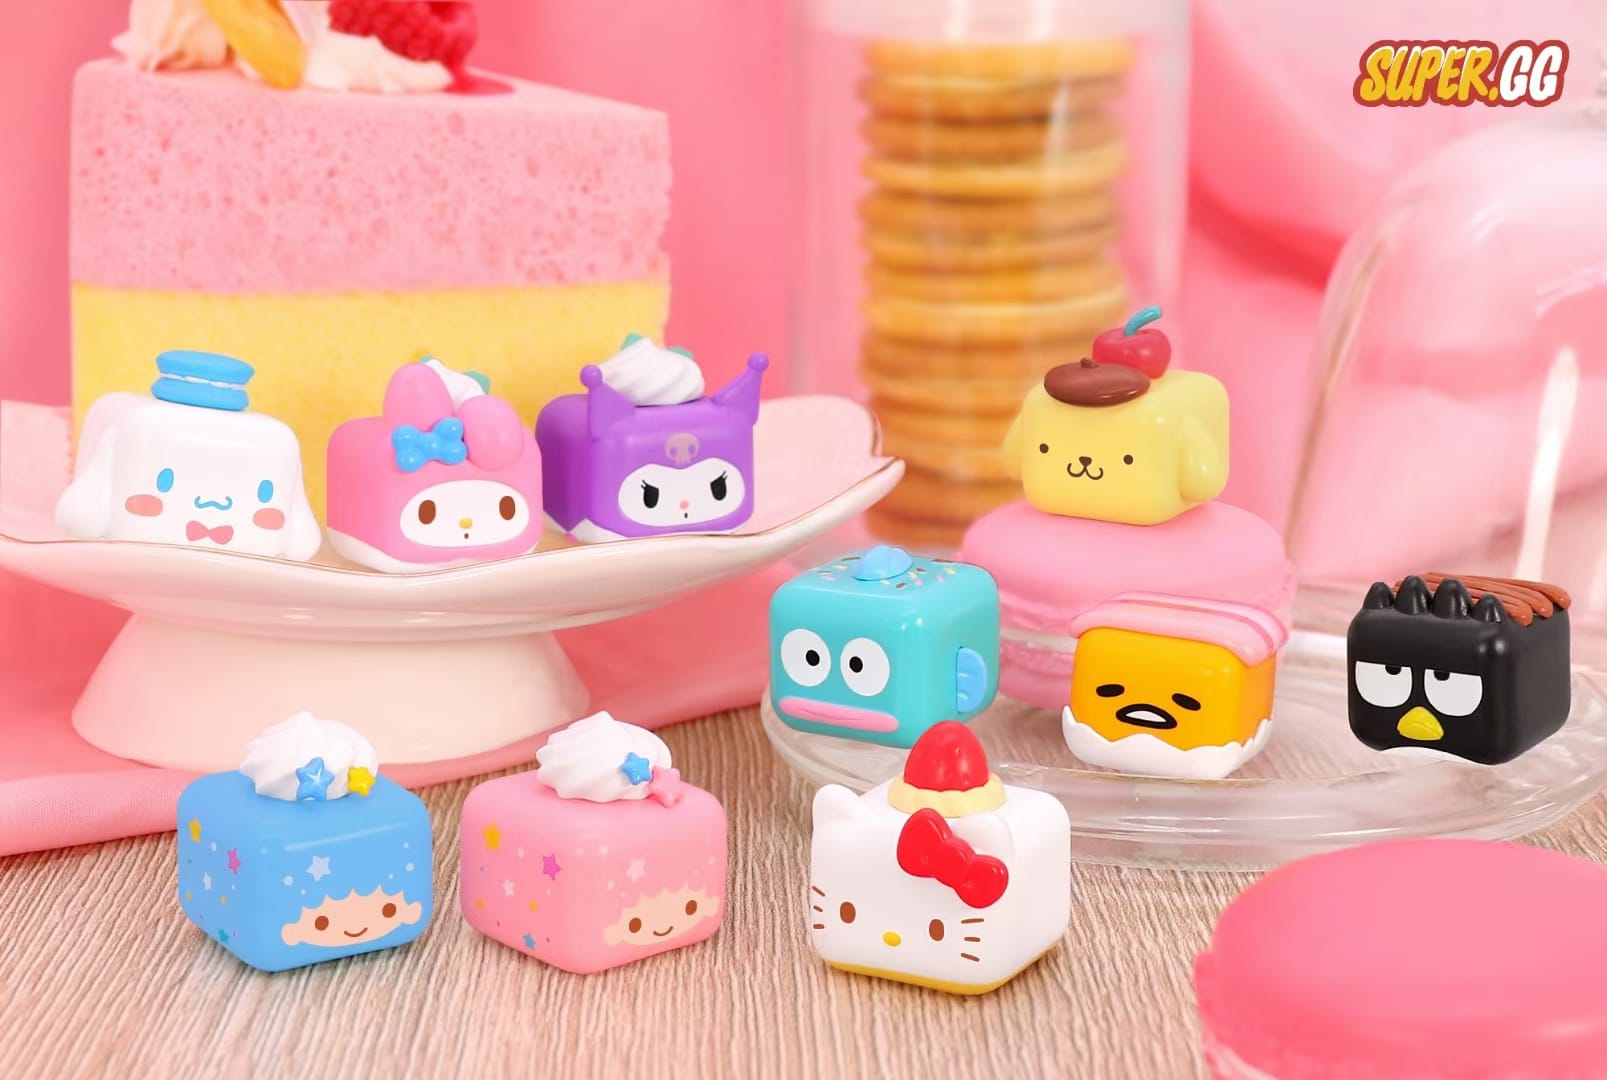 Super GG x Garmma Sanrio Characters Dessert Mini Series